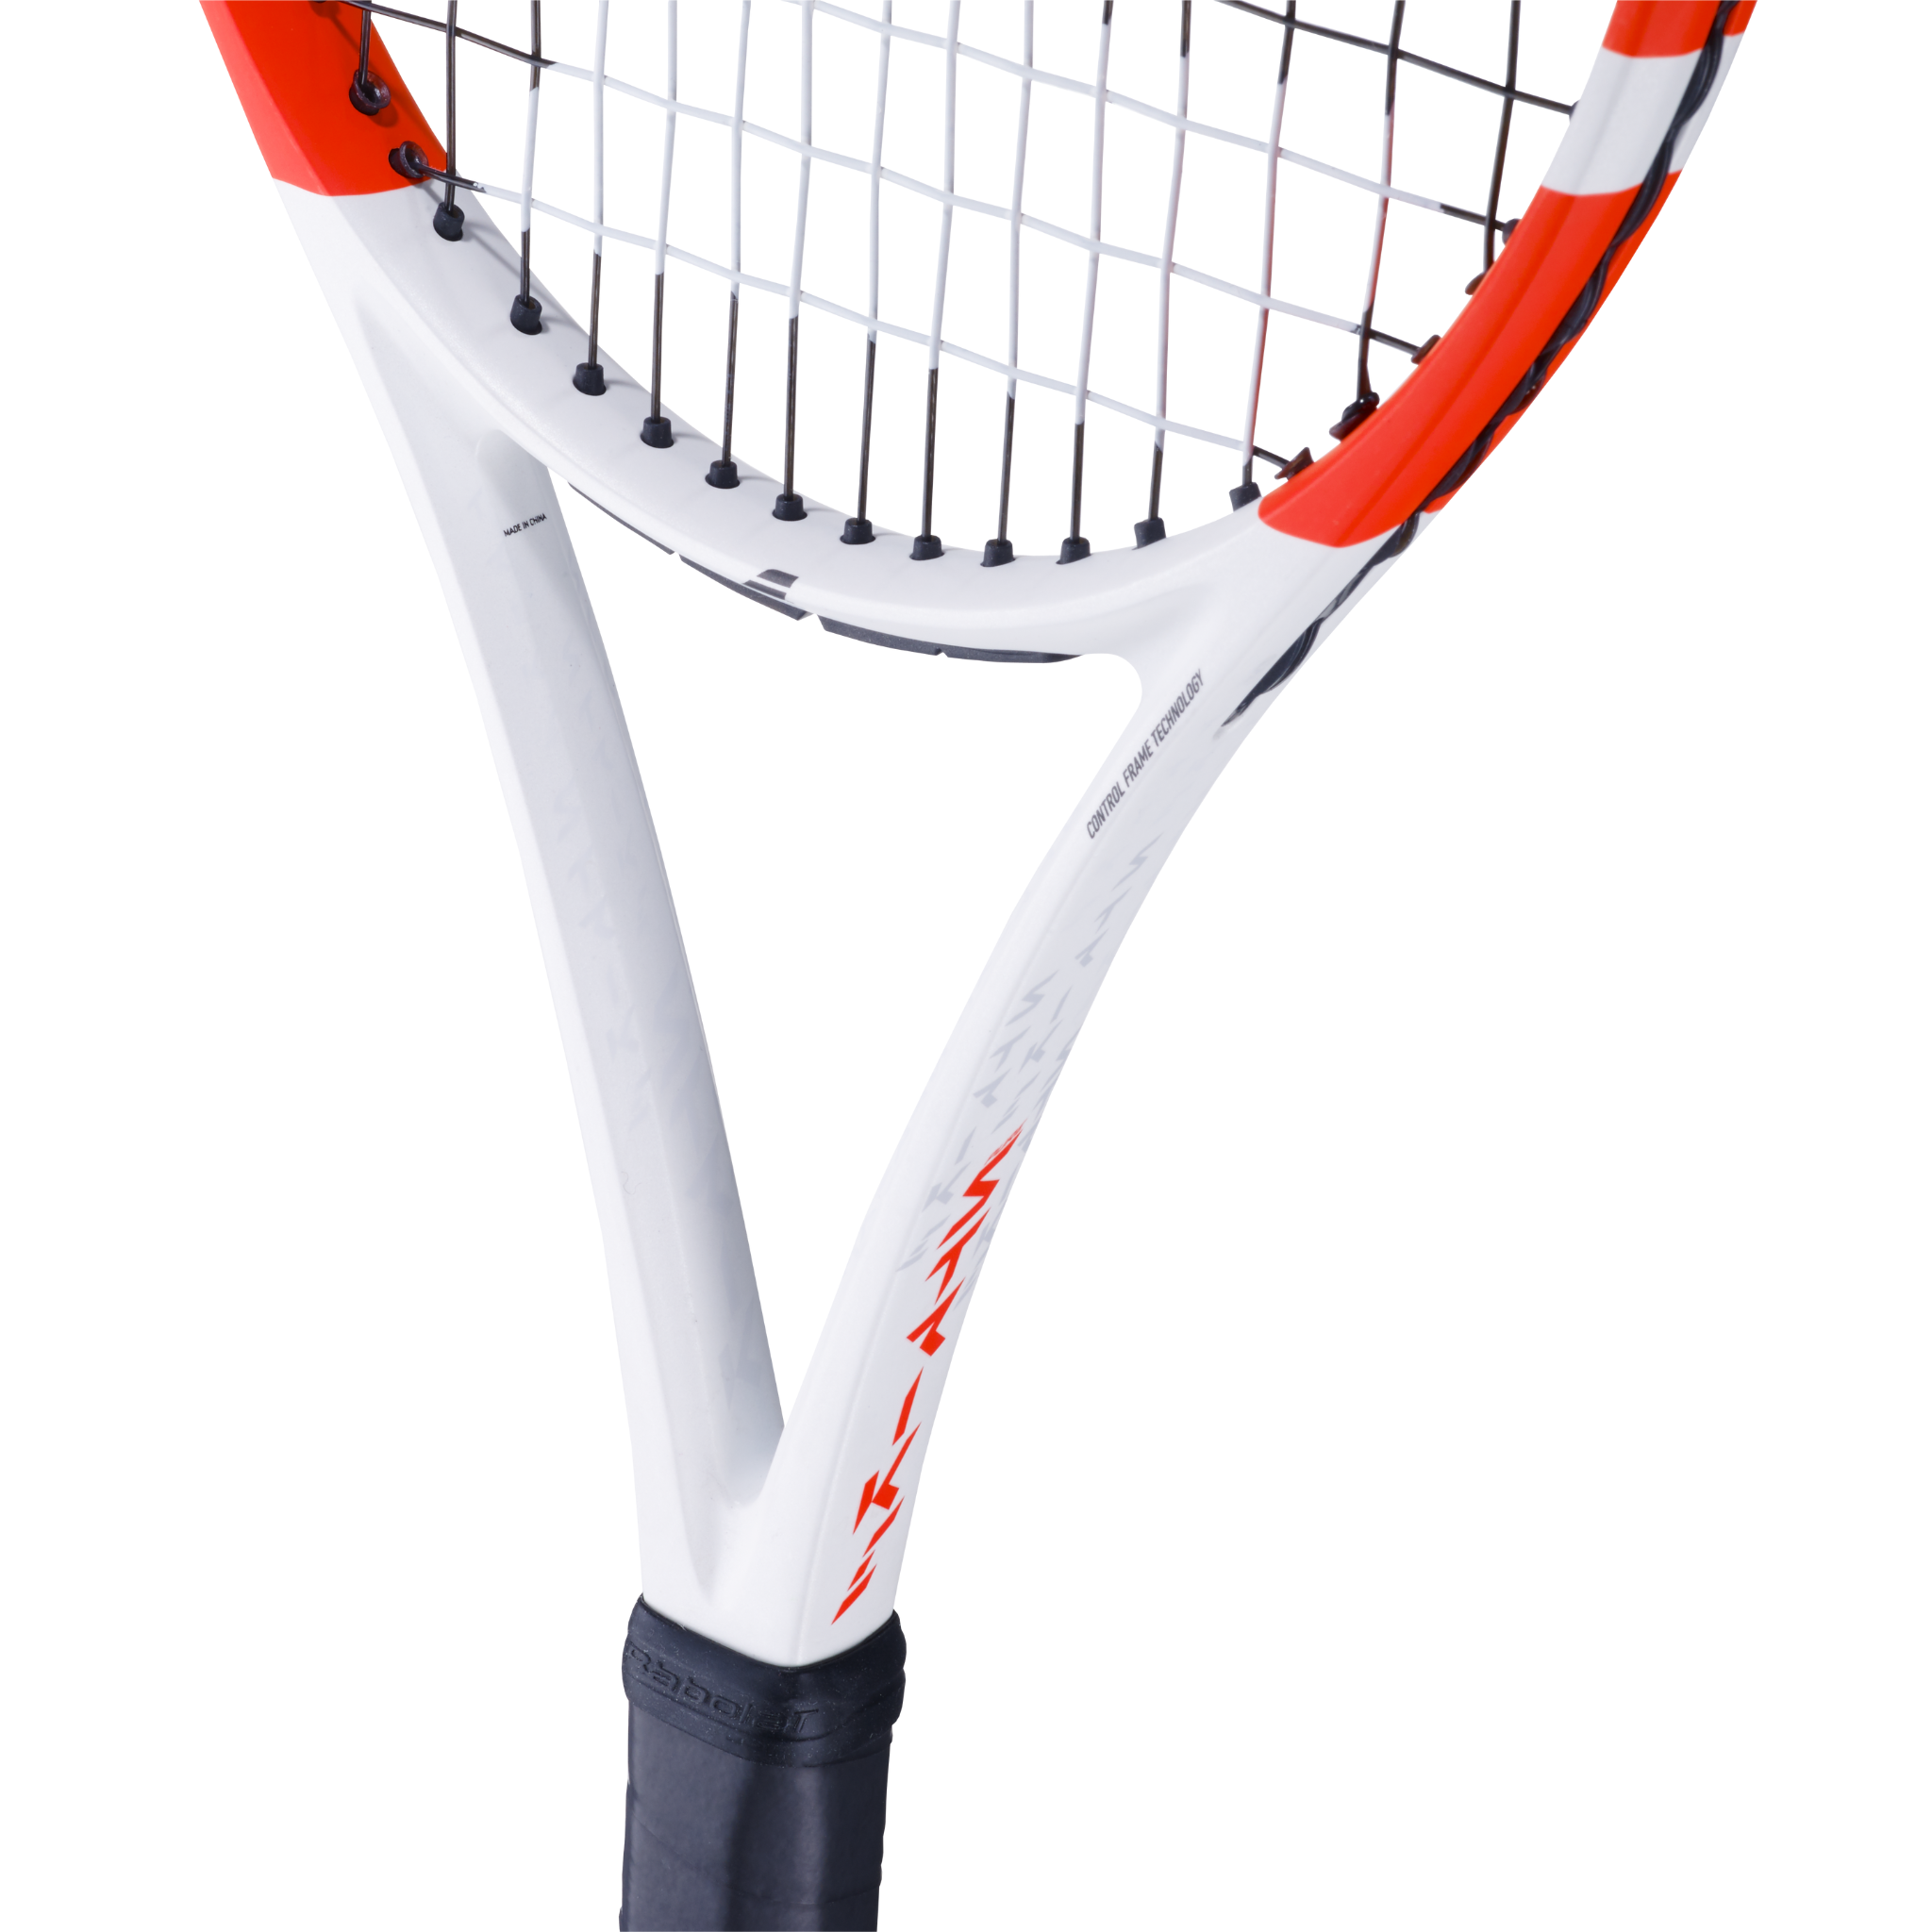 100%新品豊富なBabolaT PURE STRIKE 100 2019 テニスラケット/ グリップサイズ2/ 330g/ 中古品 店舗受取可 バボラ